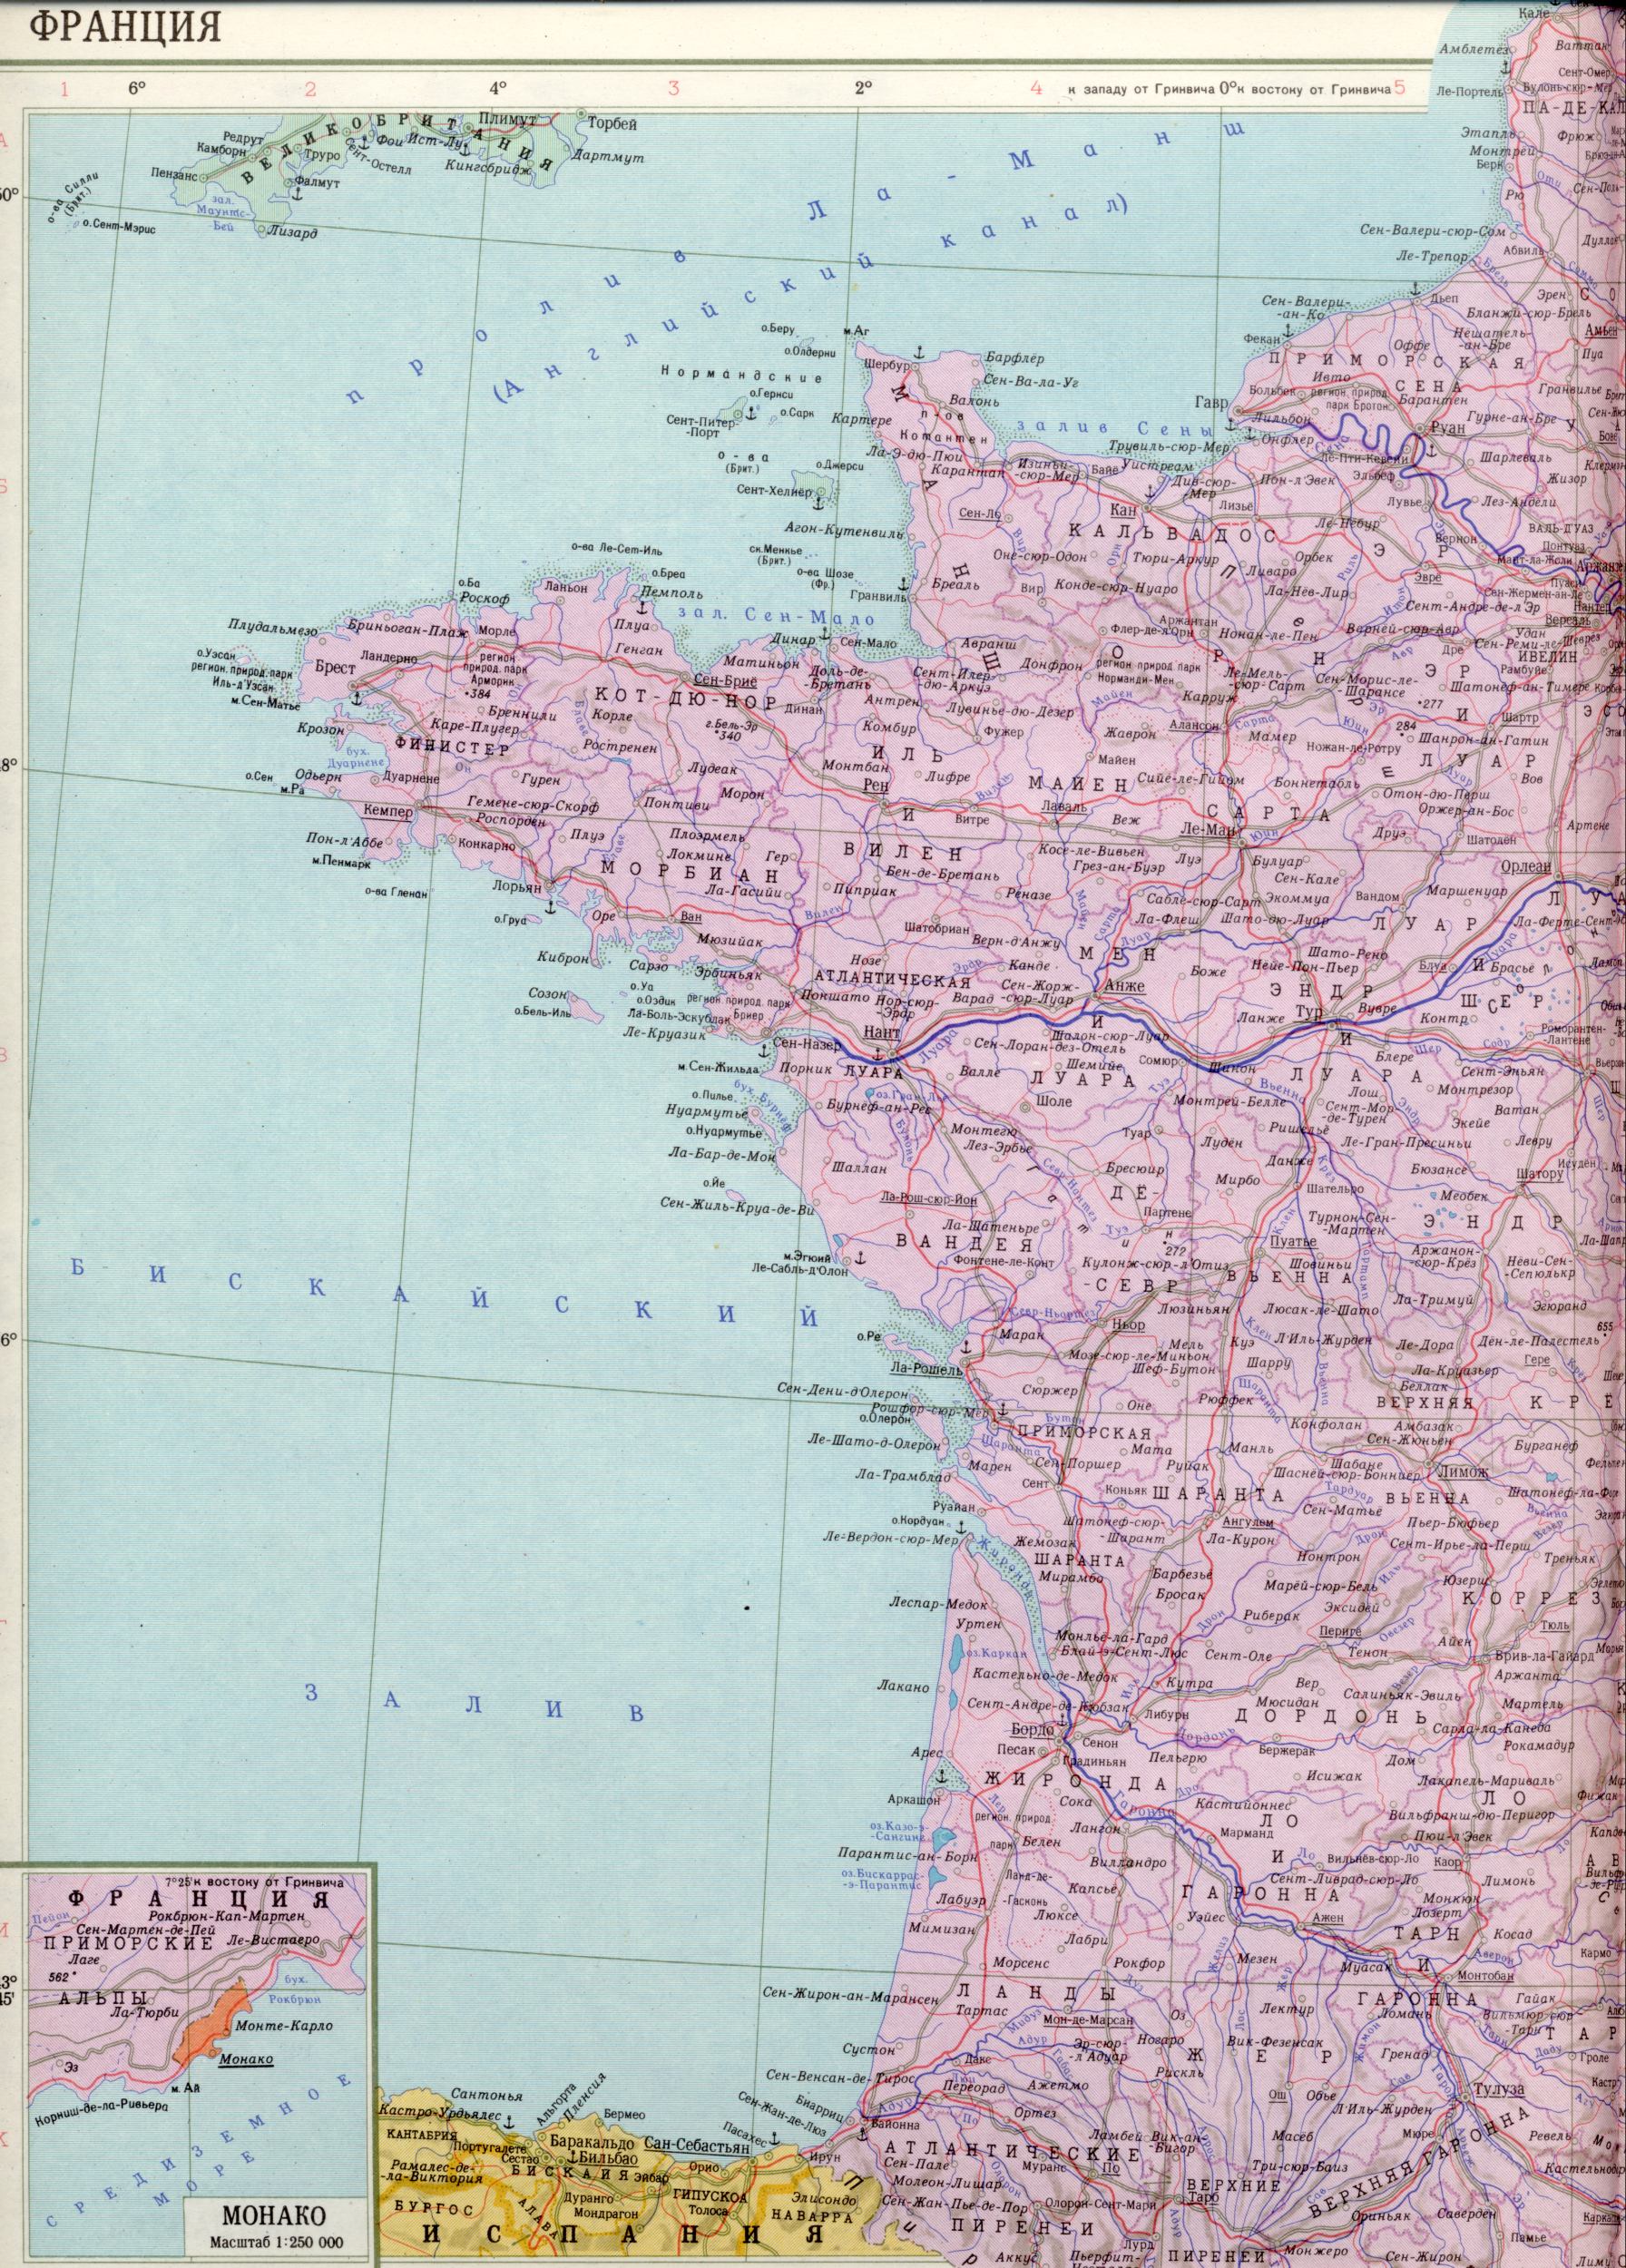 Karte von Frankreich 1cm = 30km. Freie politische Landkarte Europas